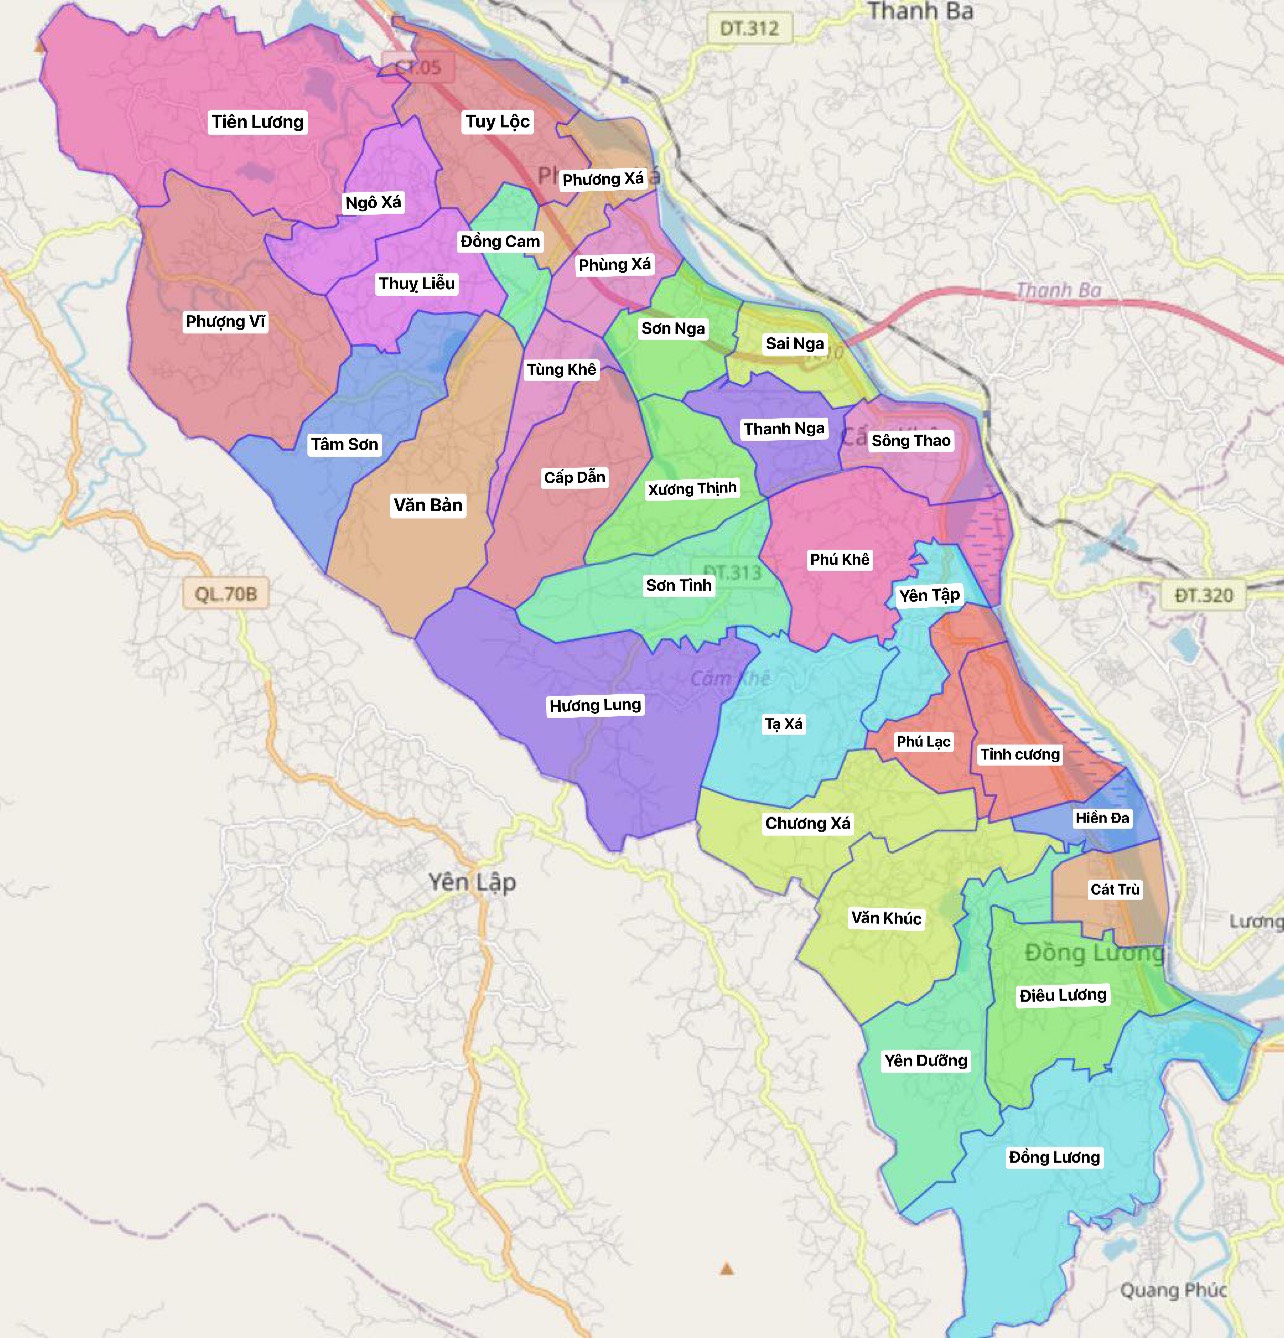 Bản đồ chi tiết huyện Cẩm Khê, tỉnh Phú Thọ sẽ giúp bạn hiểu thêm về địa lý của huyện, cung cấp thông tin quan trọng về mặt kinh tế và du lịch. Hình ảnh này sẽ giúp bạn có cái nhìn toàn diện hơn về huyện và cơ hội đầu tư nơi đây.